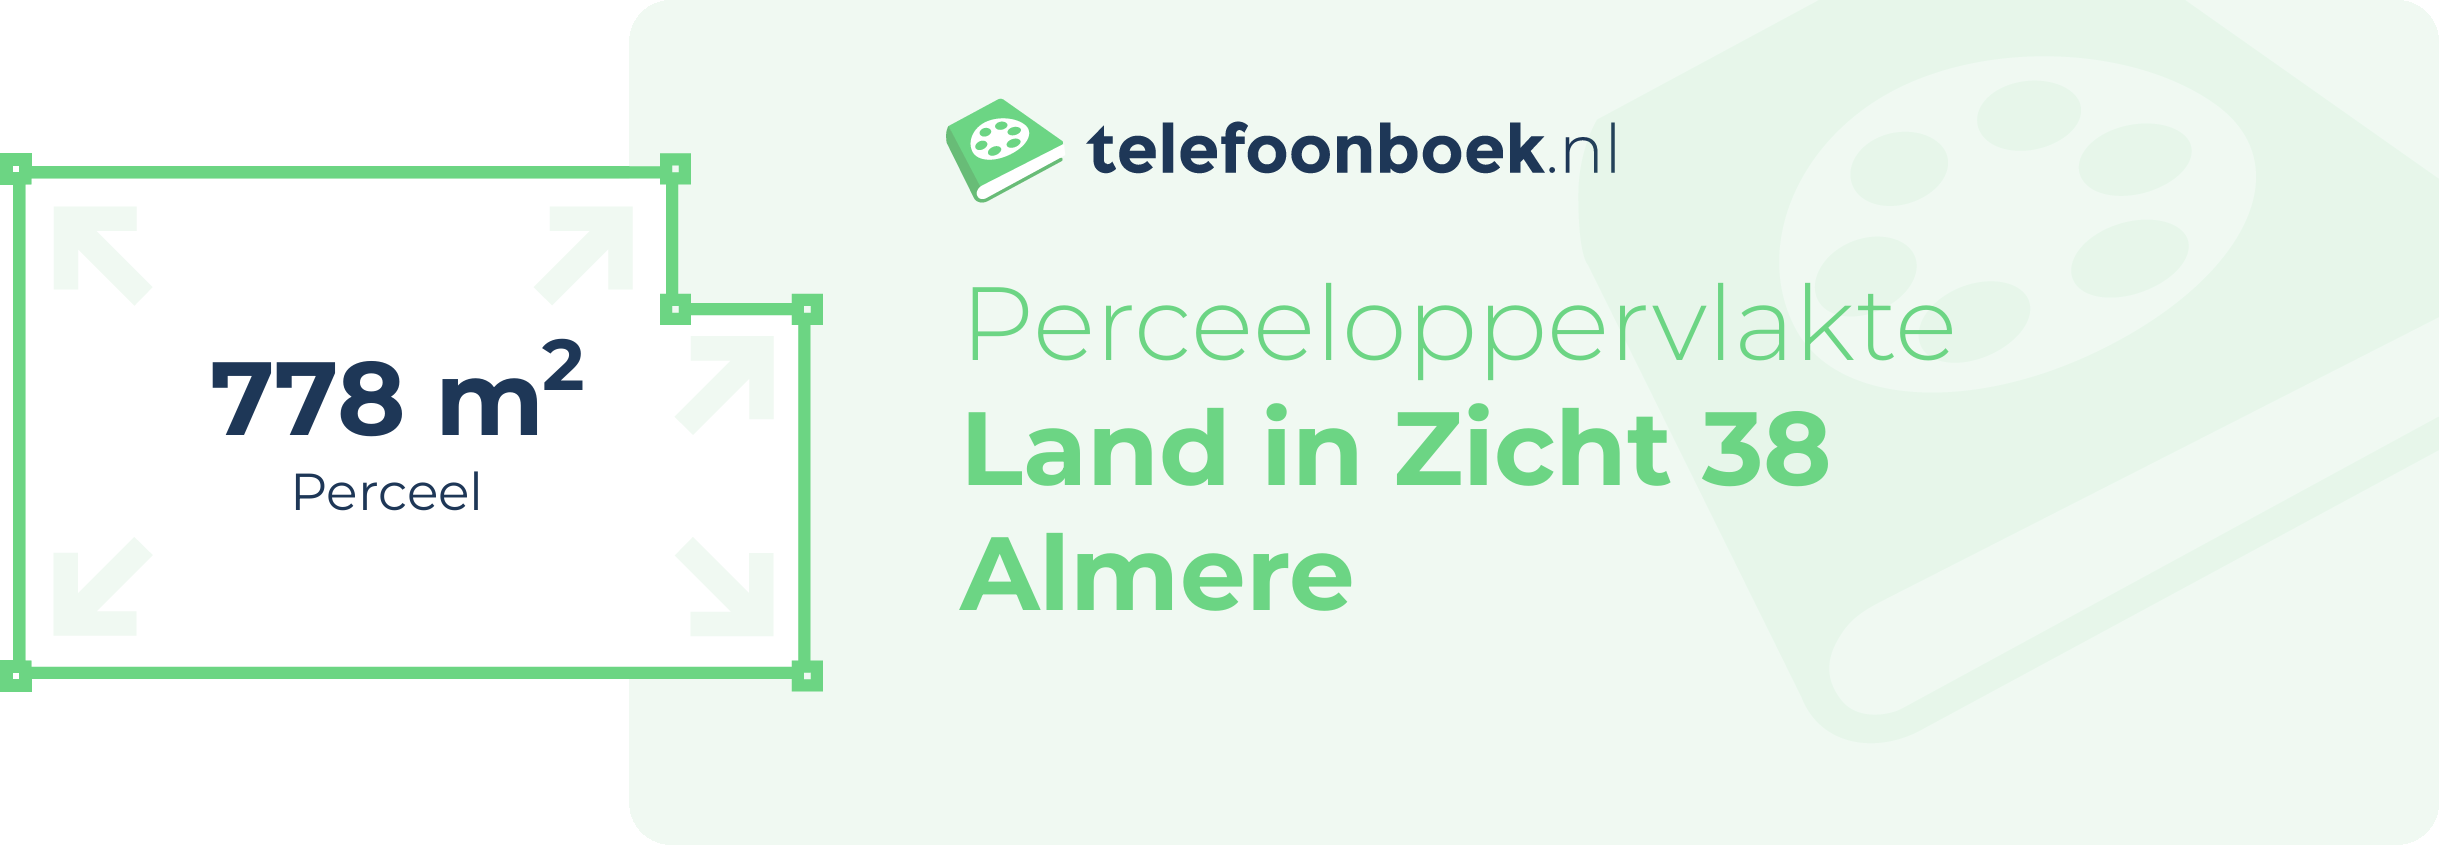 Perceeloppervlakte Land In Zicht 38 Almere